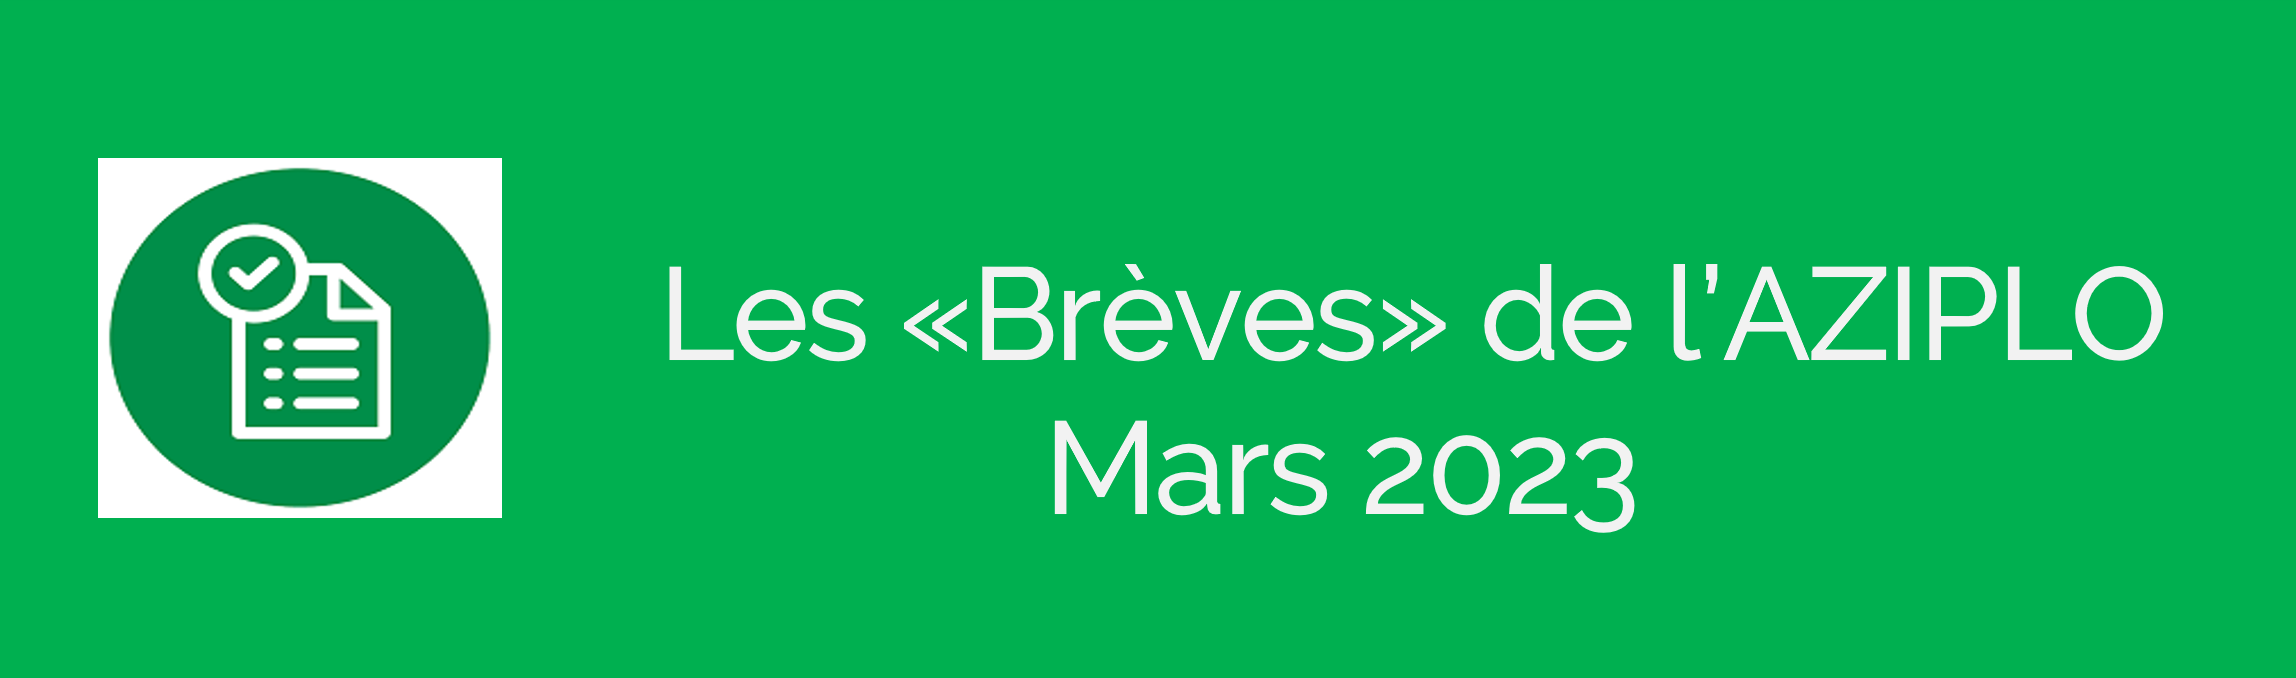 Les "Brèves" de l'Aziplo<br> Newsletter mars 2023